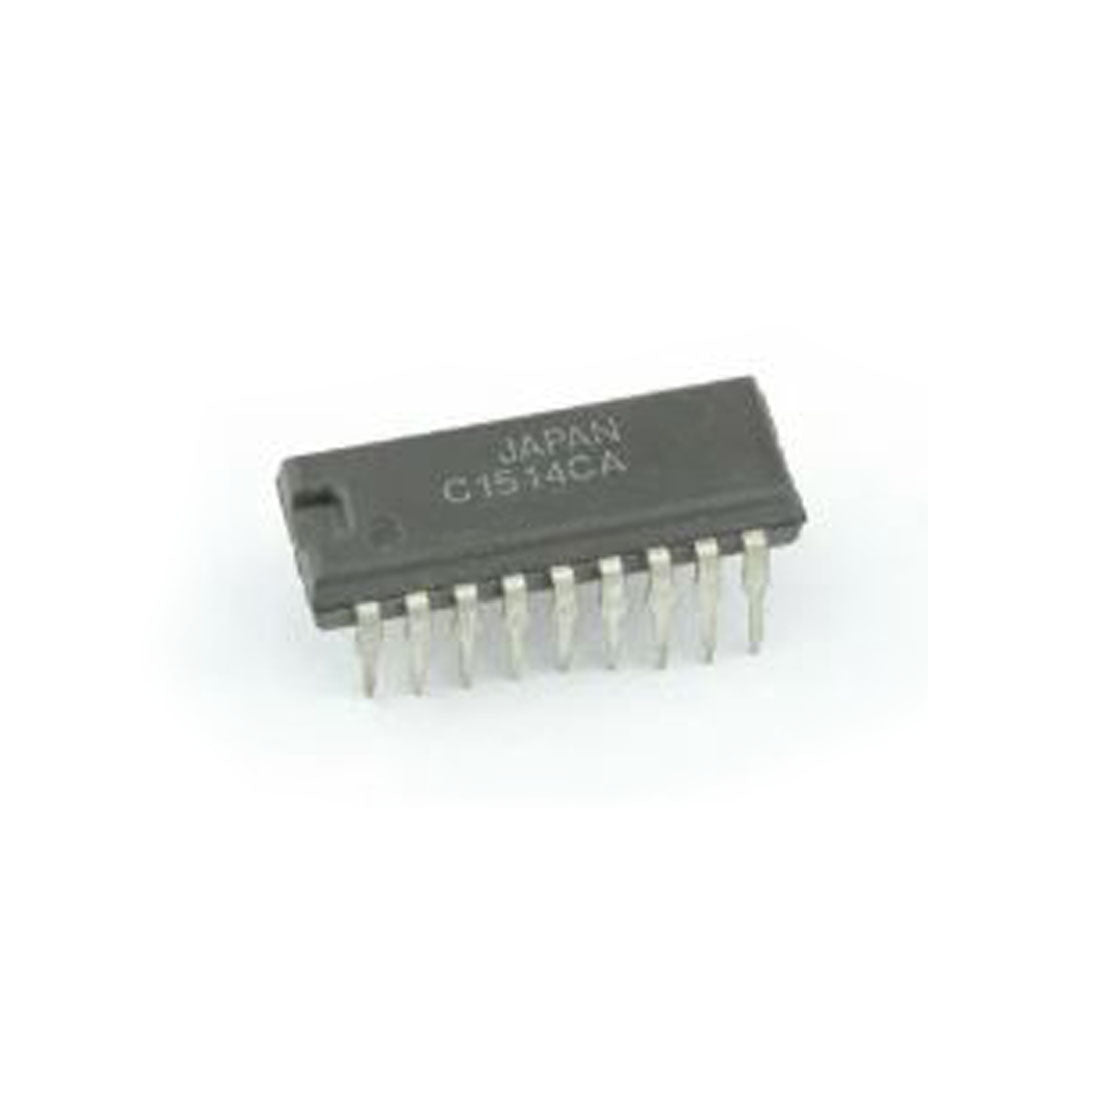 NEC C1514CA Componente elettronico, circuito integrato, transistor, 18 contatti